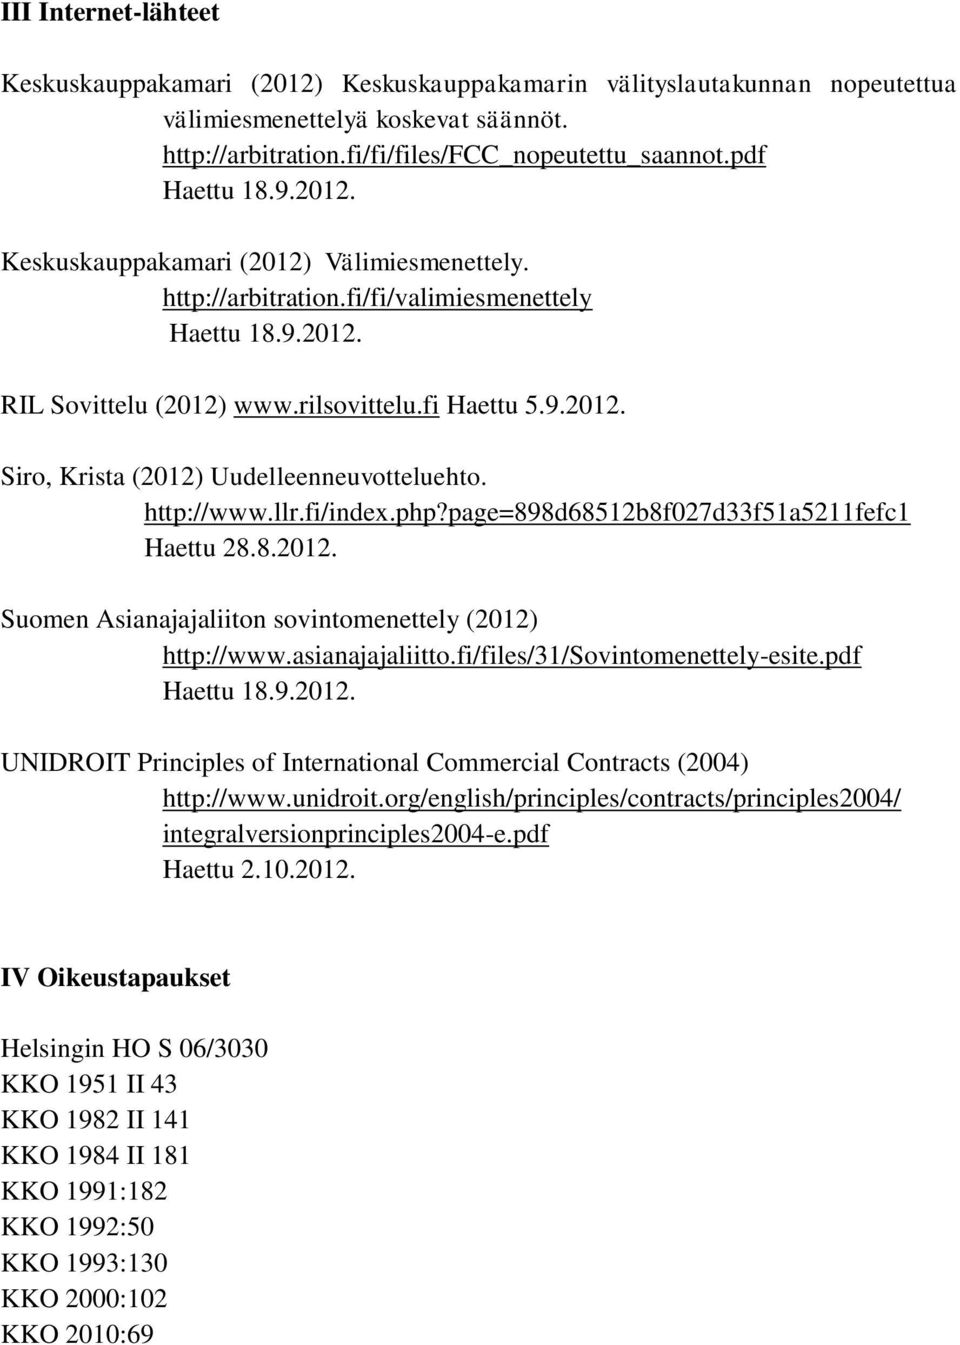 http://www.llr.fi/index.php?page=898d68512b8f027d33f51a5211fefc1 Haettu 28.8.2012. Suomen Asianajajaliiton sovintomenettely (2012) http://www.asianajajaliitto.fi/files/31/sovintomenettely-esite.